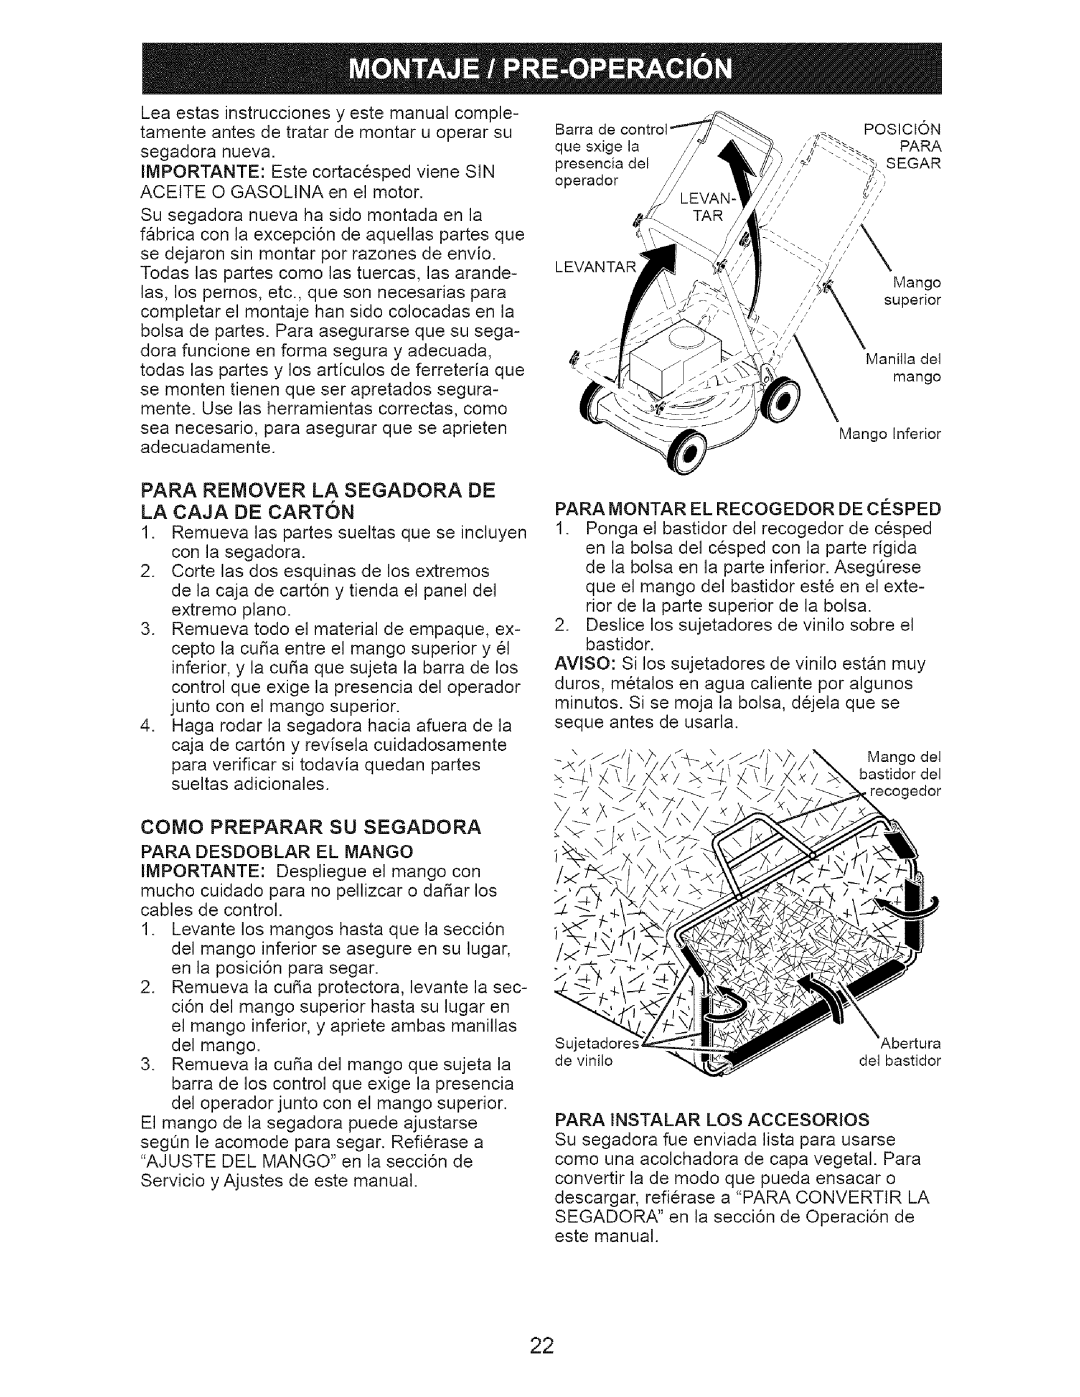 Craftsman 917.3882 owner manual Para Remover La Segadora De La Caja De Carton 